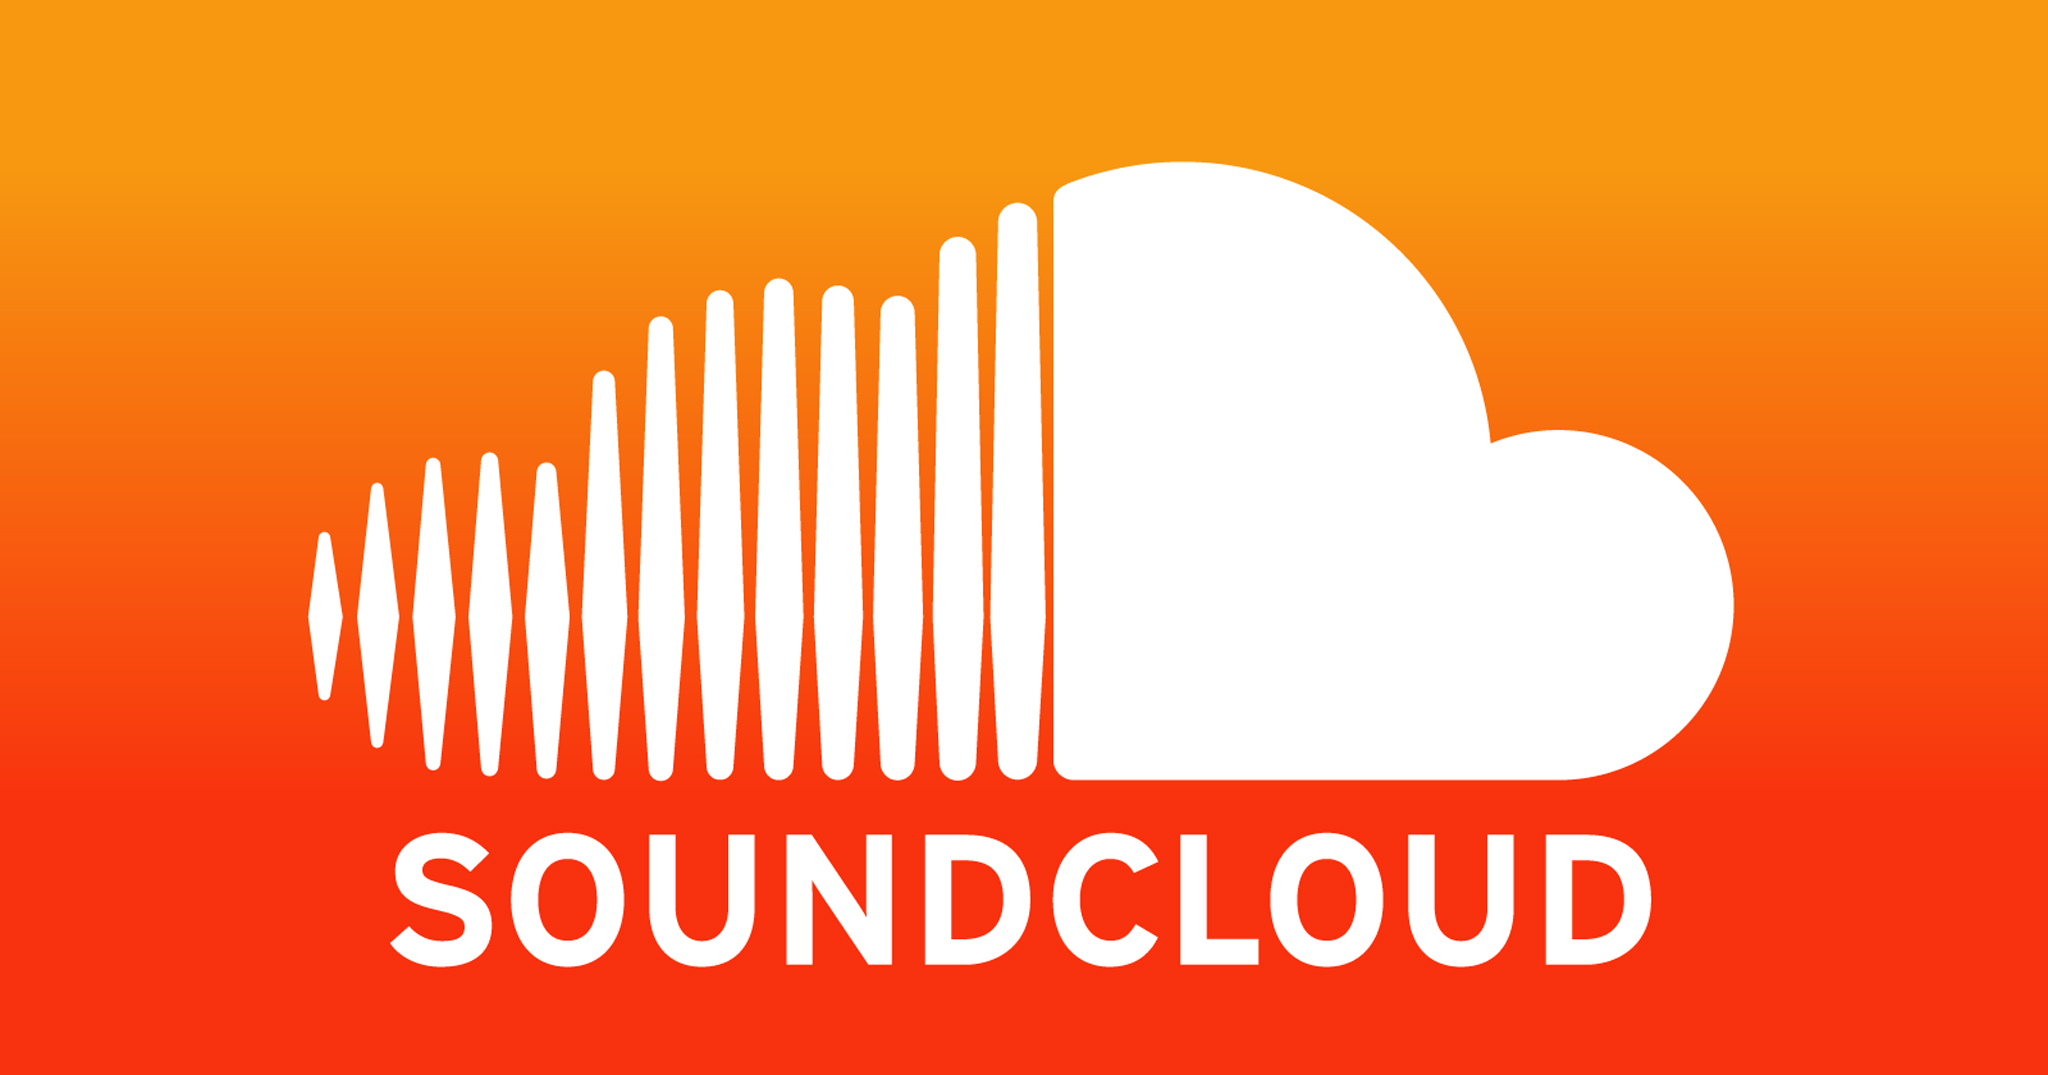 [Chia sẻ] SoundCloud là một dịch vụ nghe nhạc tuyệt vời nhưng bị bỏ rơi, anh em có sử dụng không?